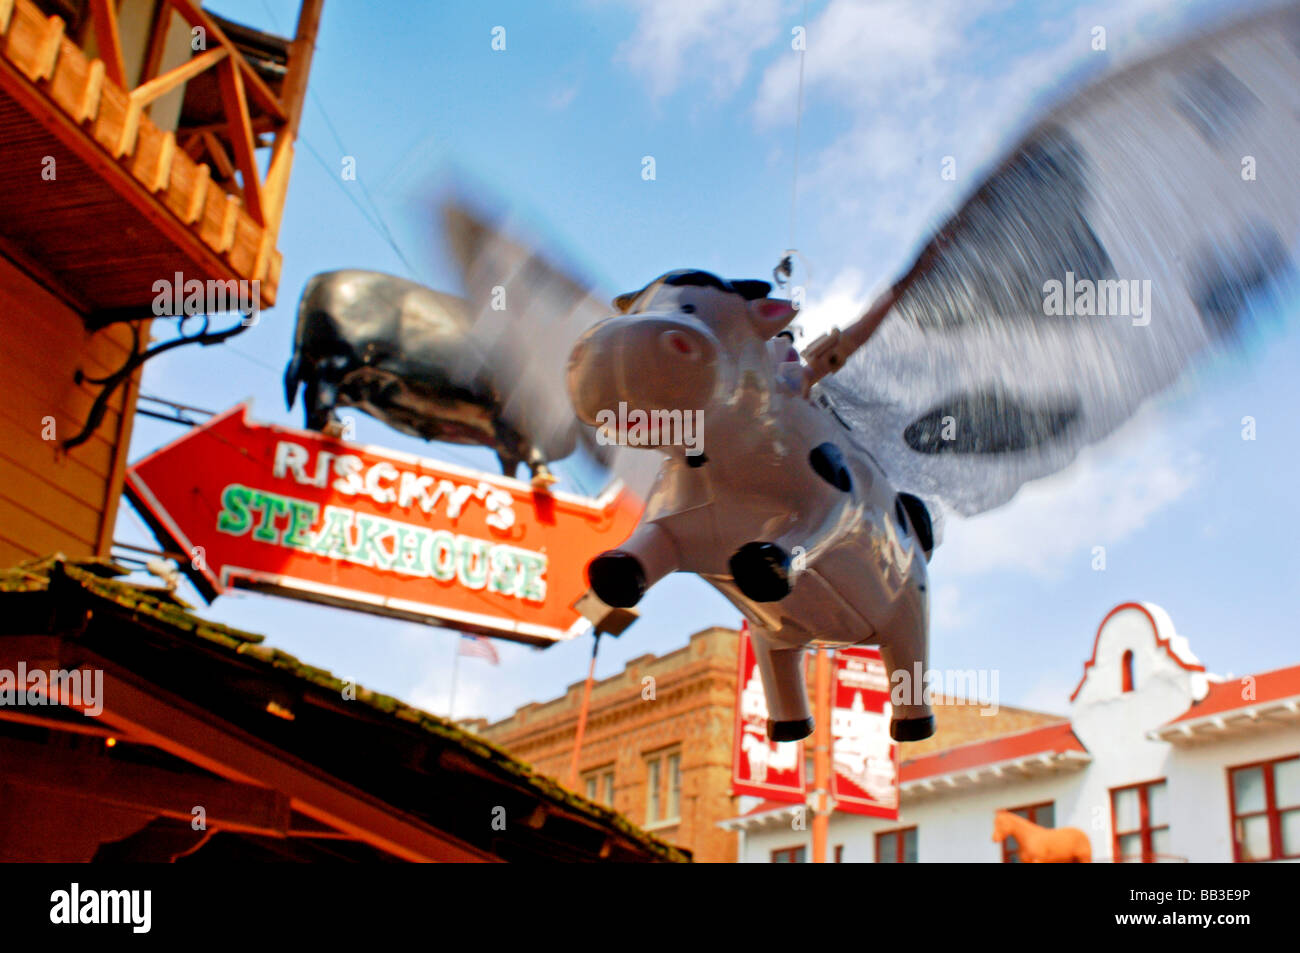 Spielzeug fliegende Kuh ein Novum Element klappen seine Flügel in den Wind  an die Stockyards touristische Attraktion von Fort Worth Texas USA  Stockfotografie - Alamy